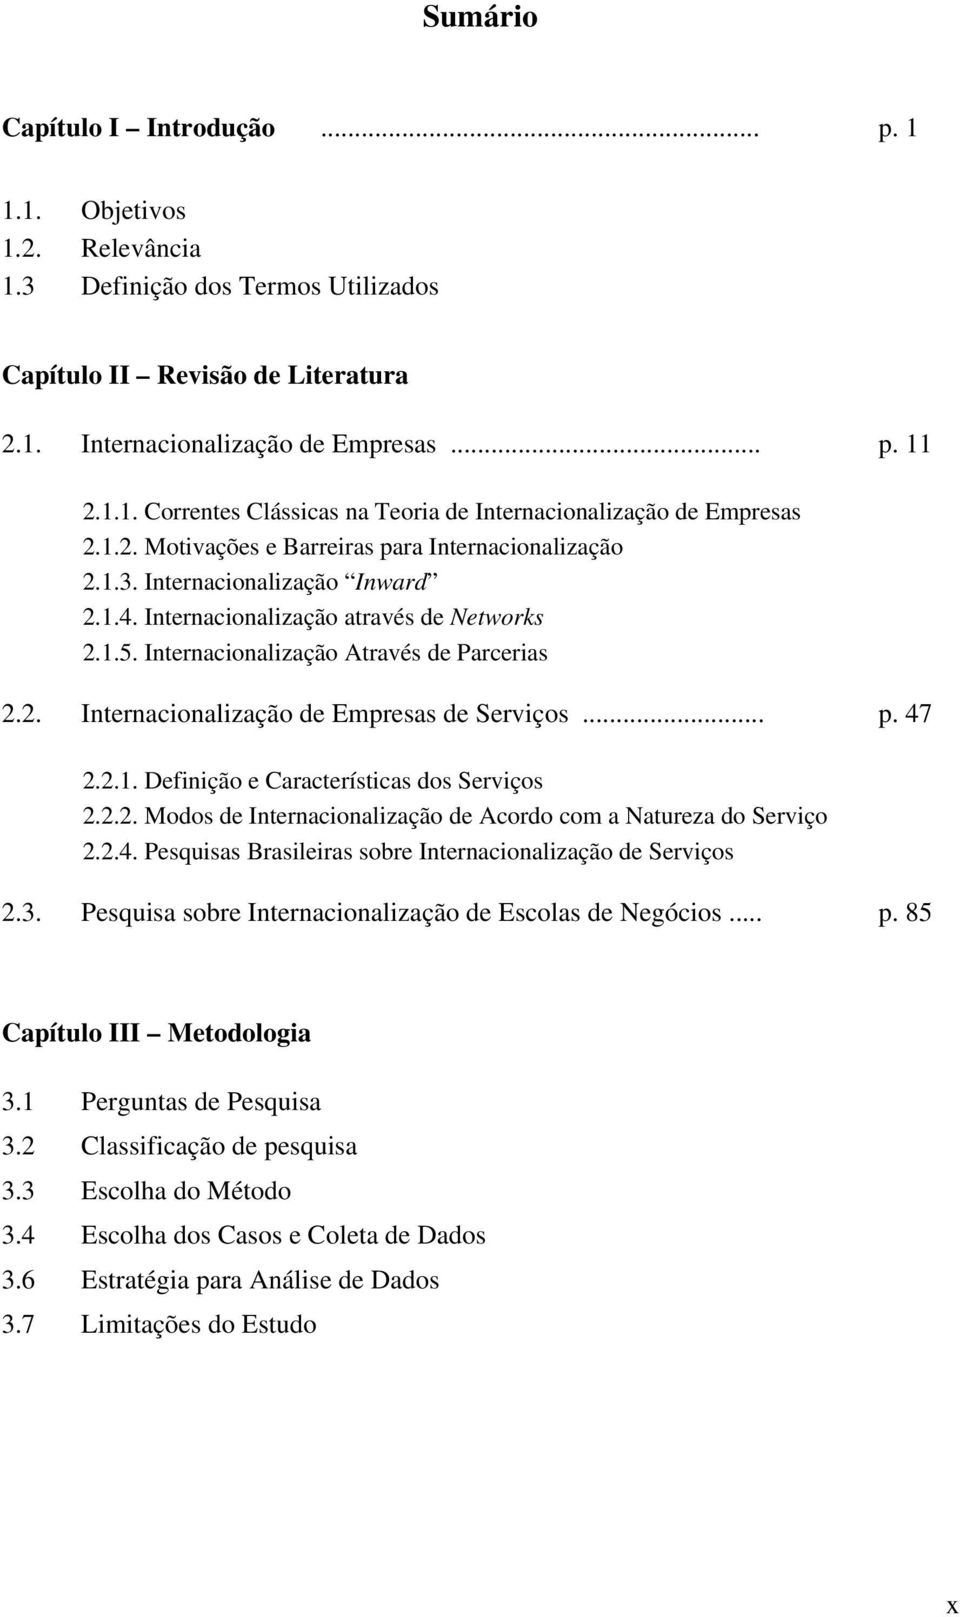 .. p. 47 2.2.1. Definição e Características dos Serviços 2.2.2. Modos de Internacionalização de Acordo com a Natureza do Serviço 2.2.4. Pesquisas Brasileiras sobre Internacionalização de Serviços 2.3.